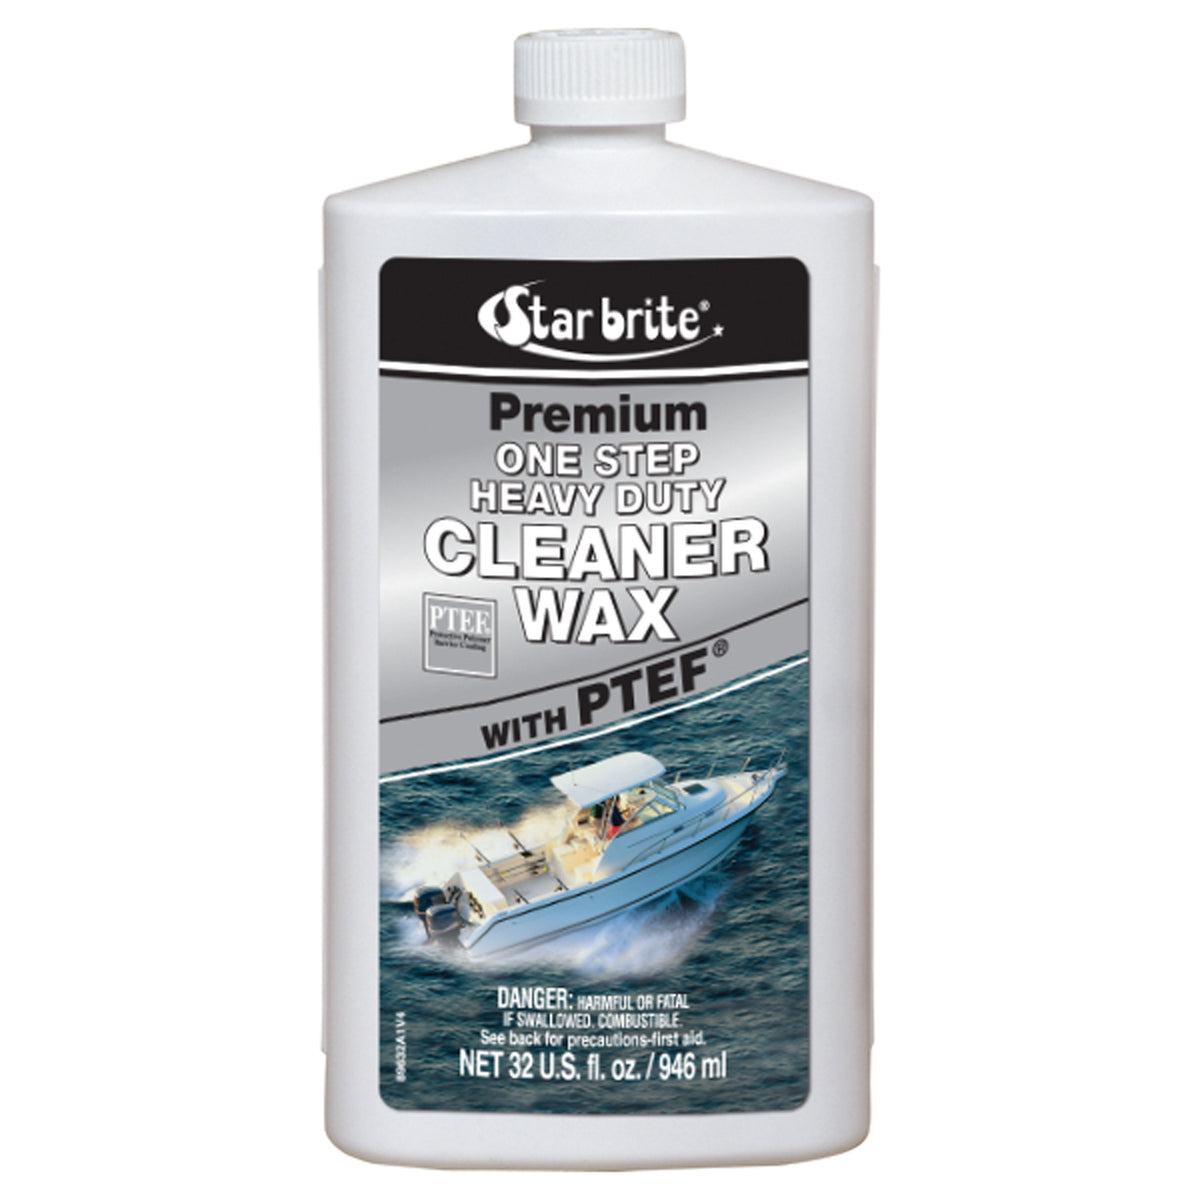 Star brite 089616P Premium Cleaner Wax - 16 oz